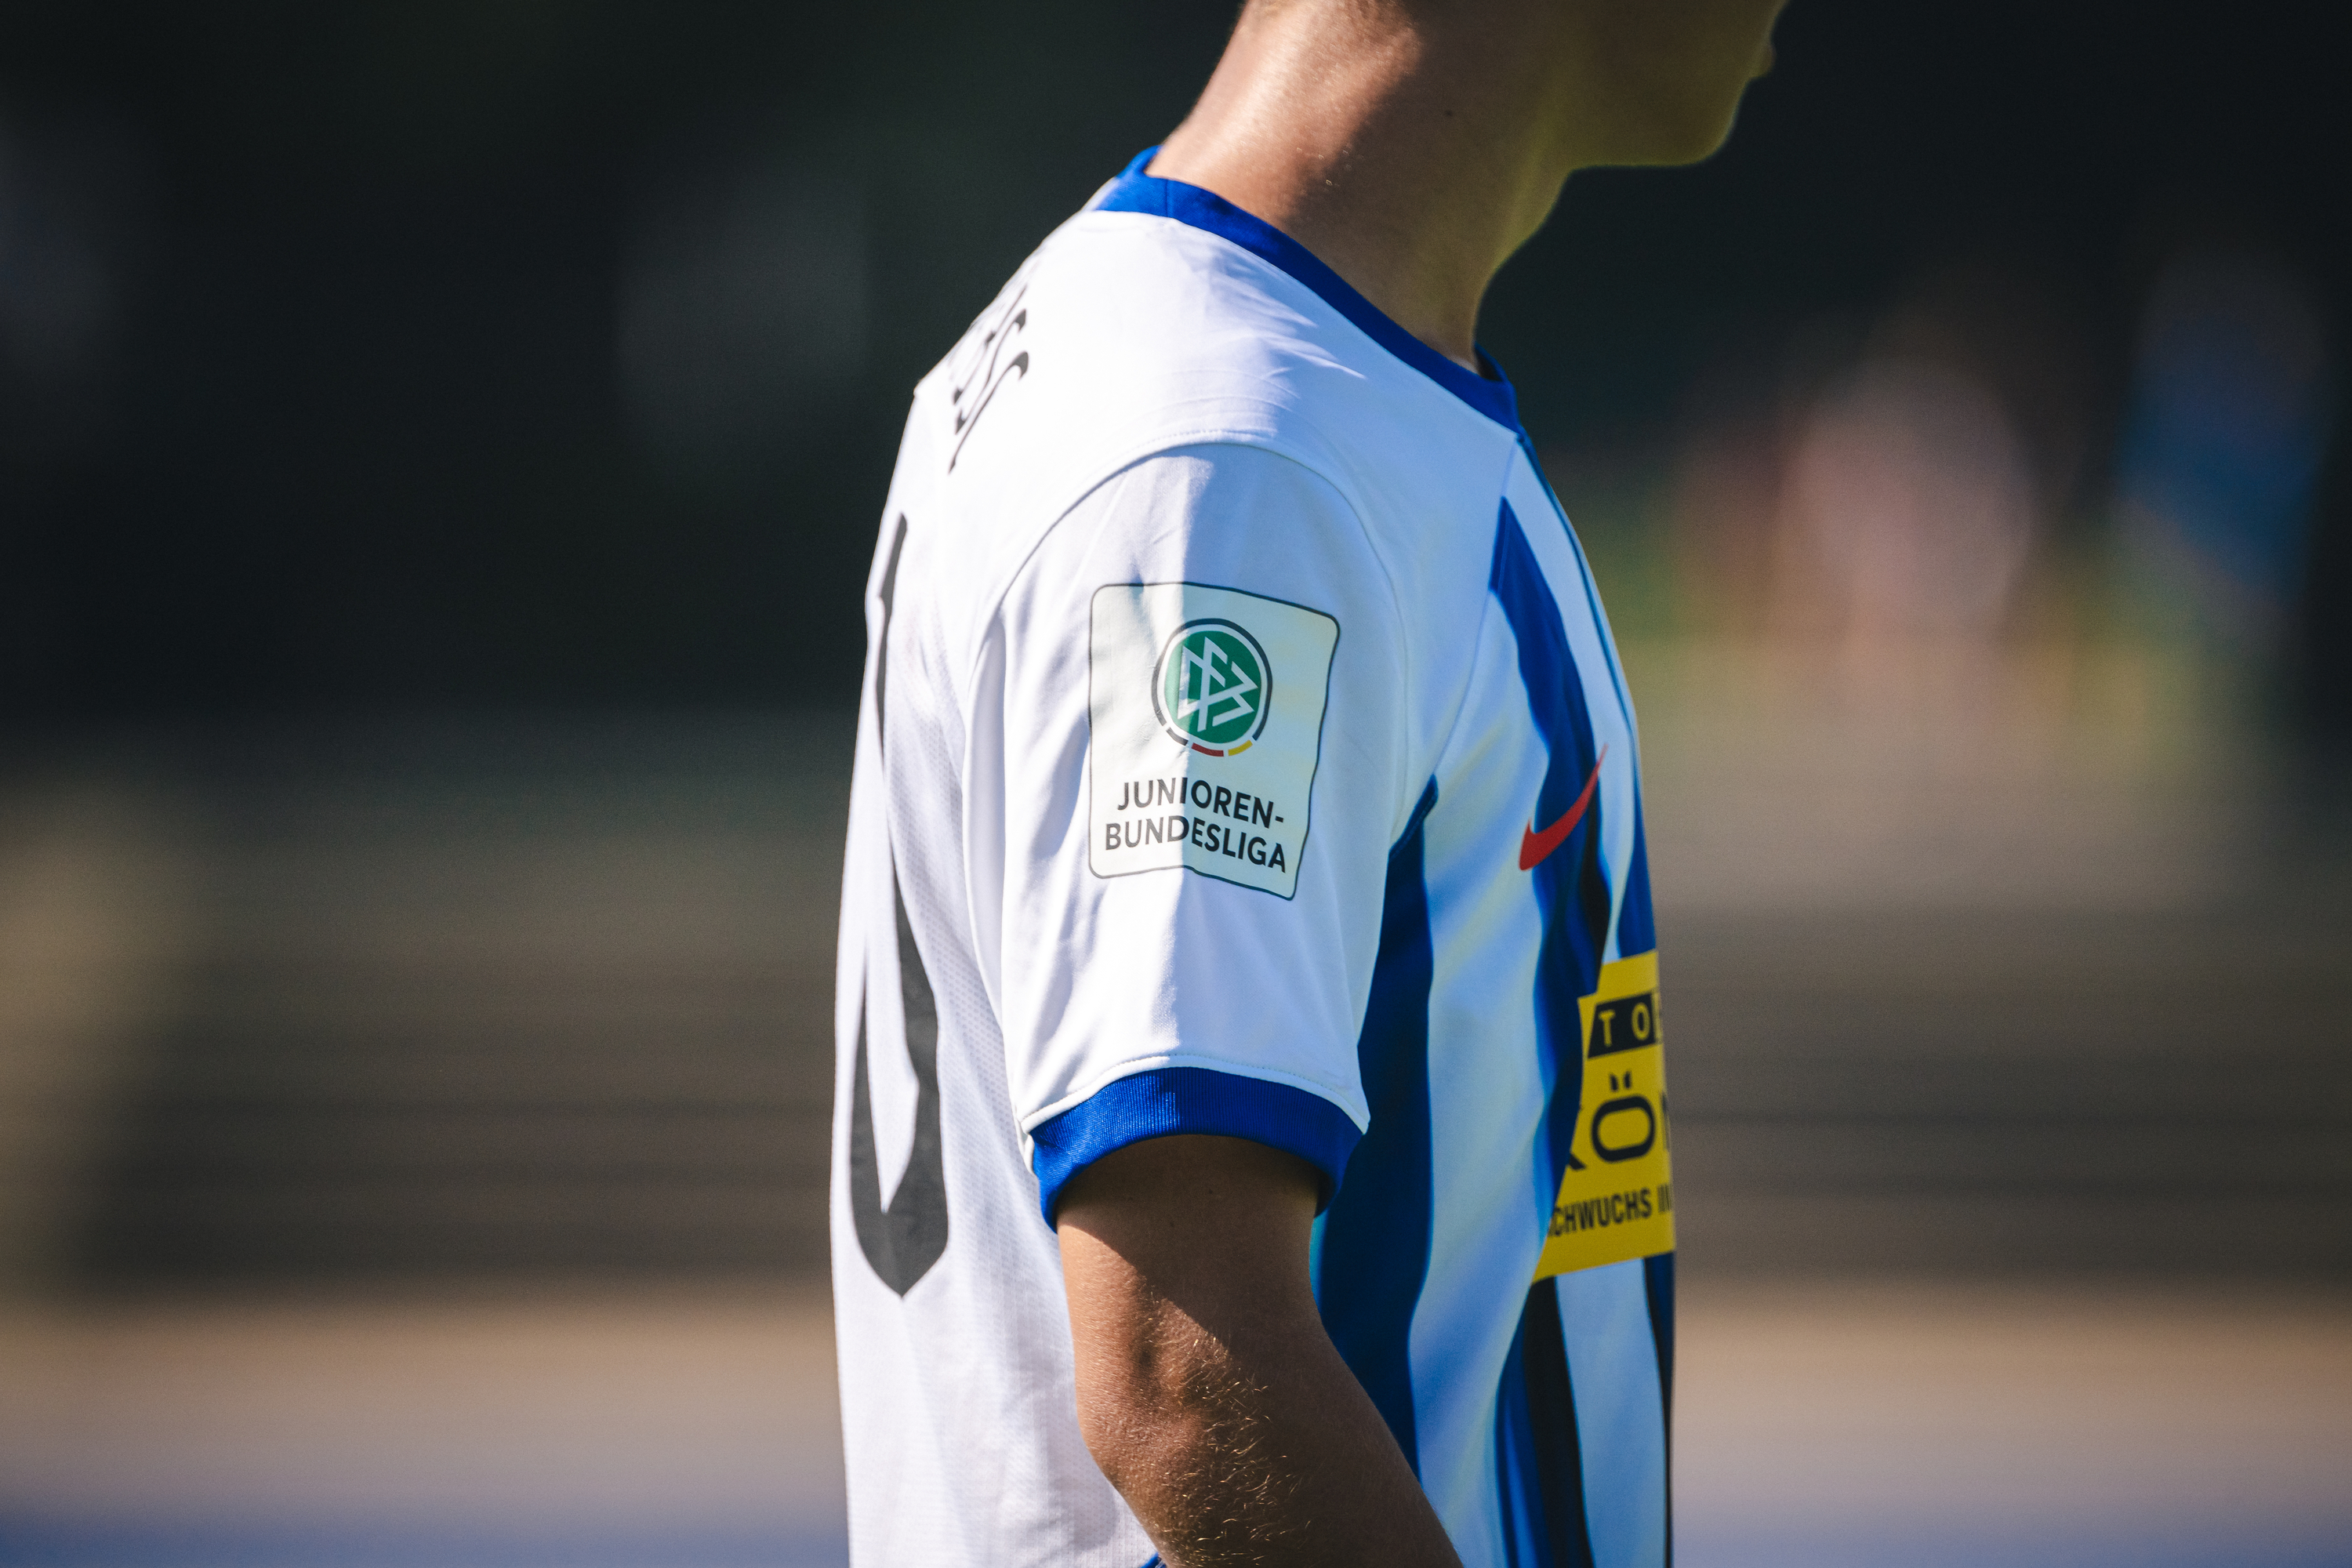 Das Logo der Junioren-Bundesliga auf dem Trikotärmel.